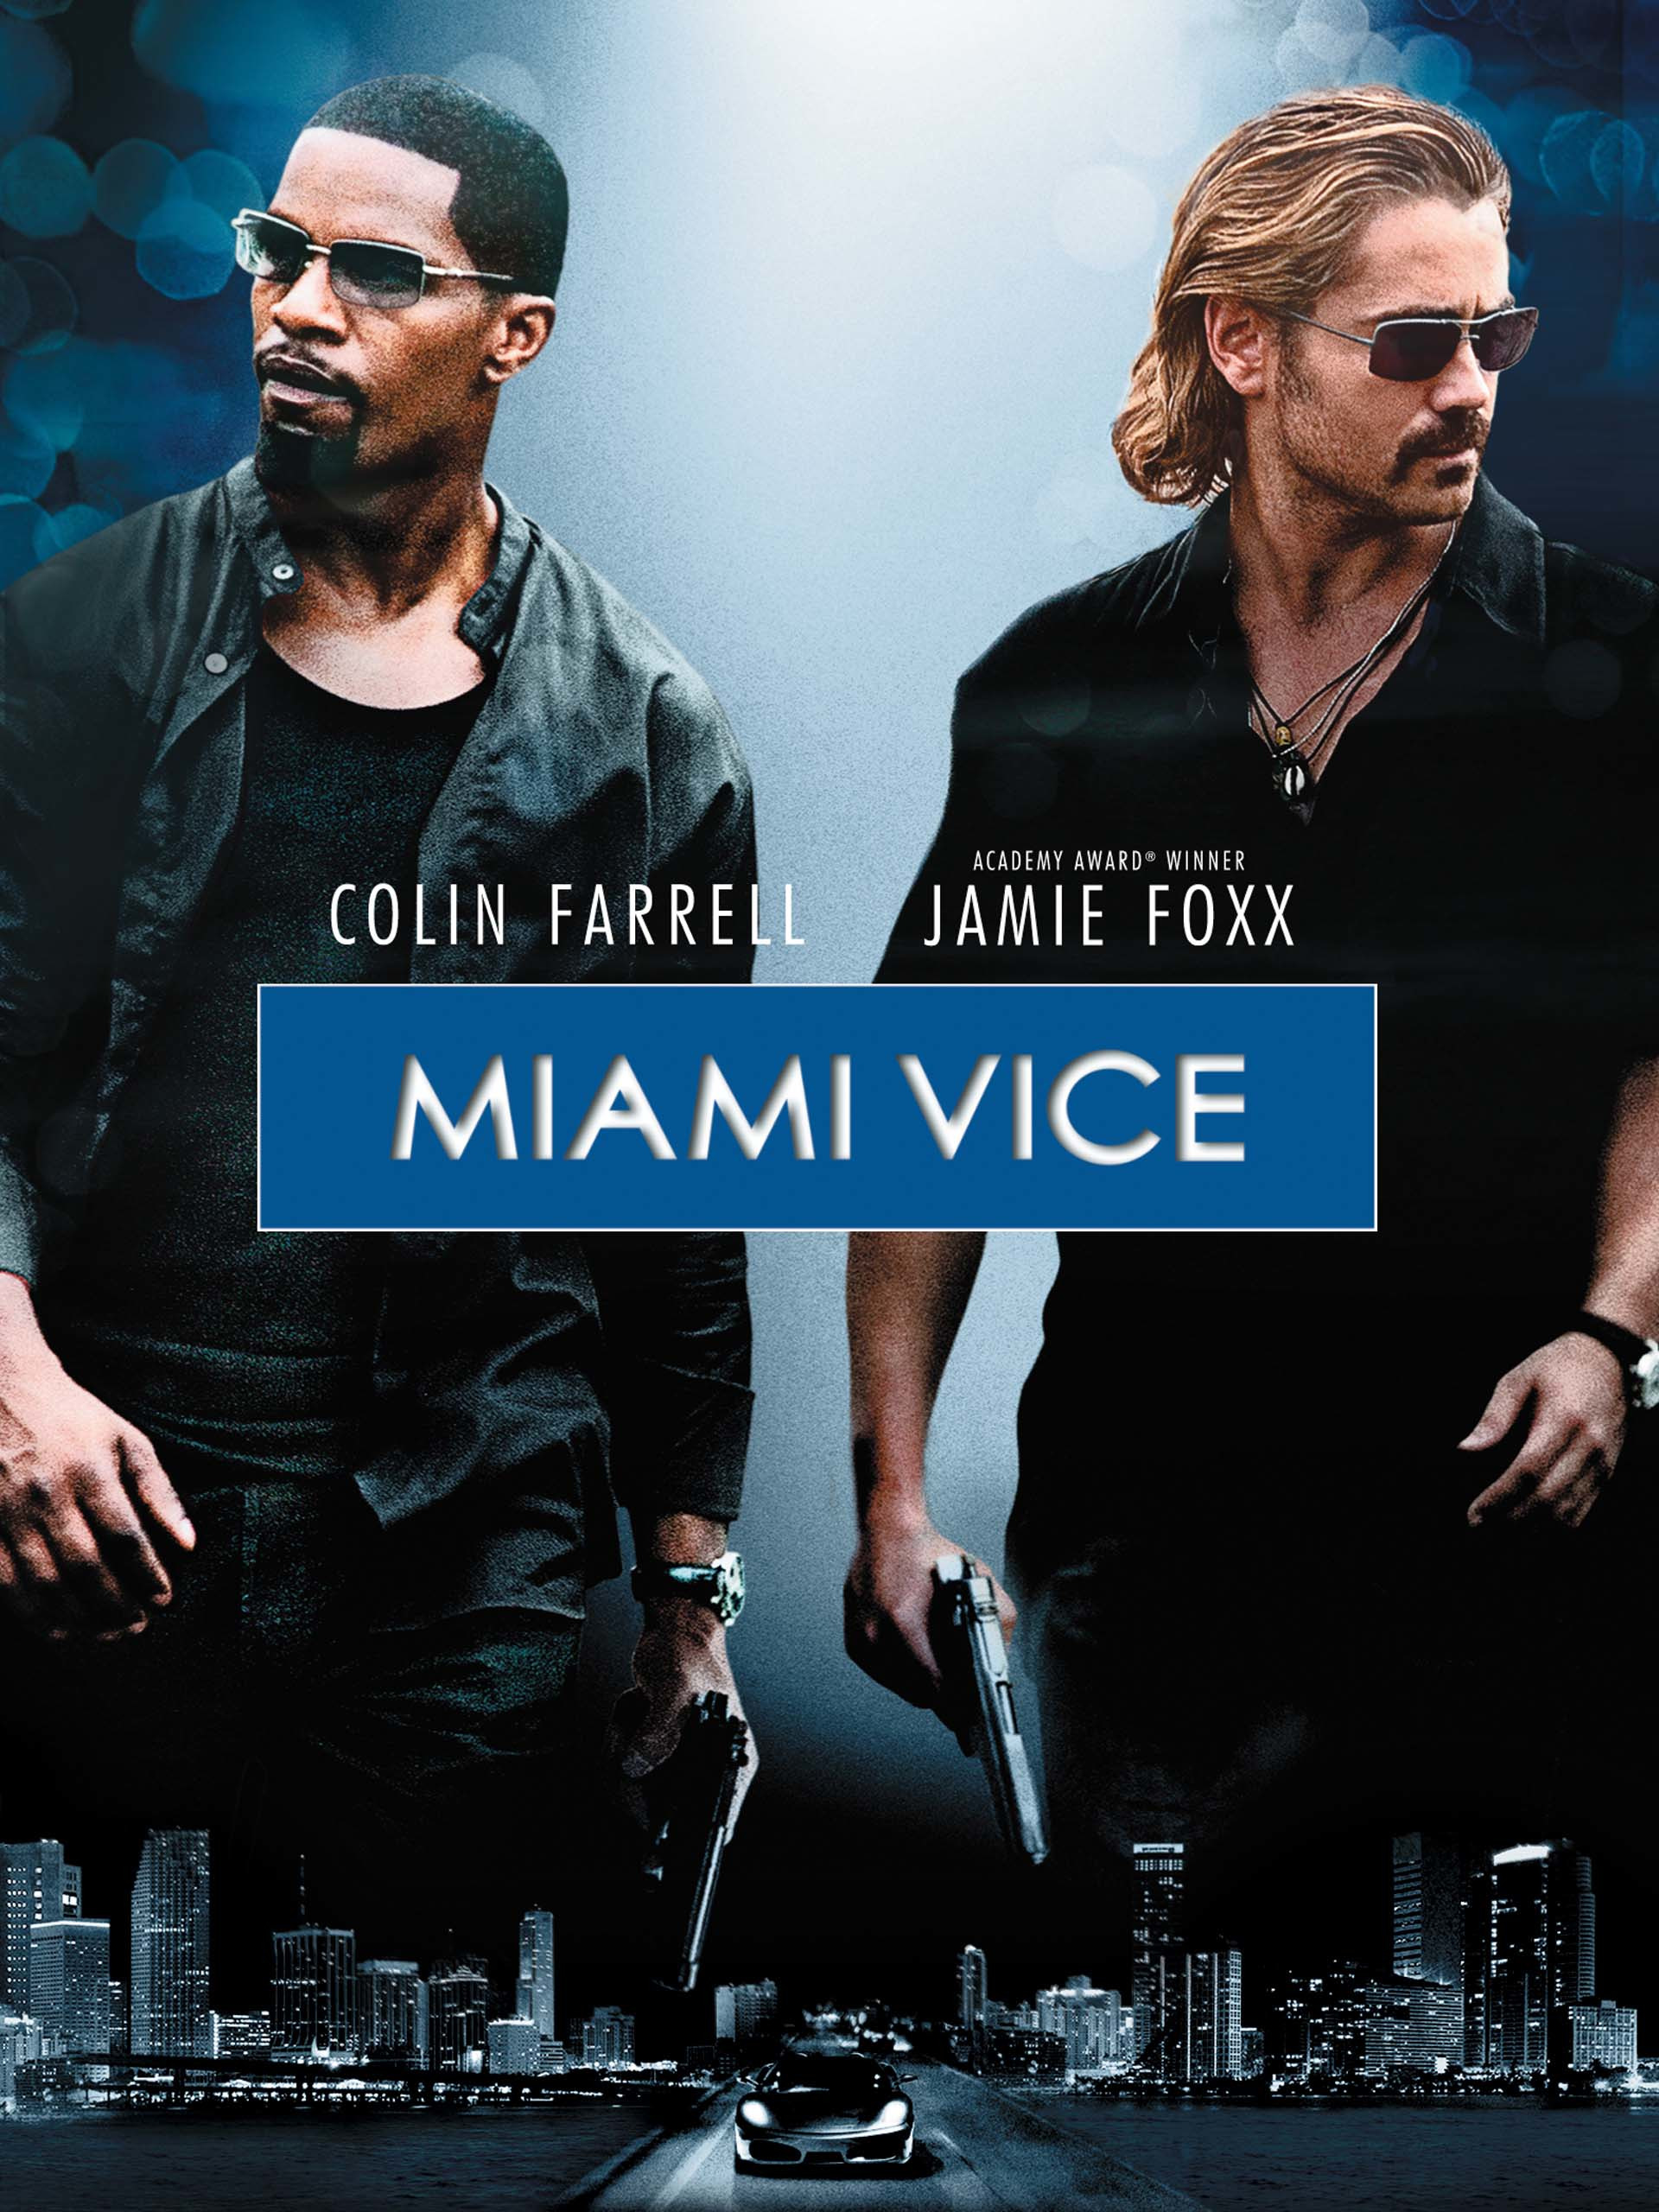 ดูหนังออนไลน์ฟรี ดูหนังออนไลน์ Miami Vice 2006 ไมอามี่ ไวซ์ คู่เดือดไมอามี่ movie678